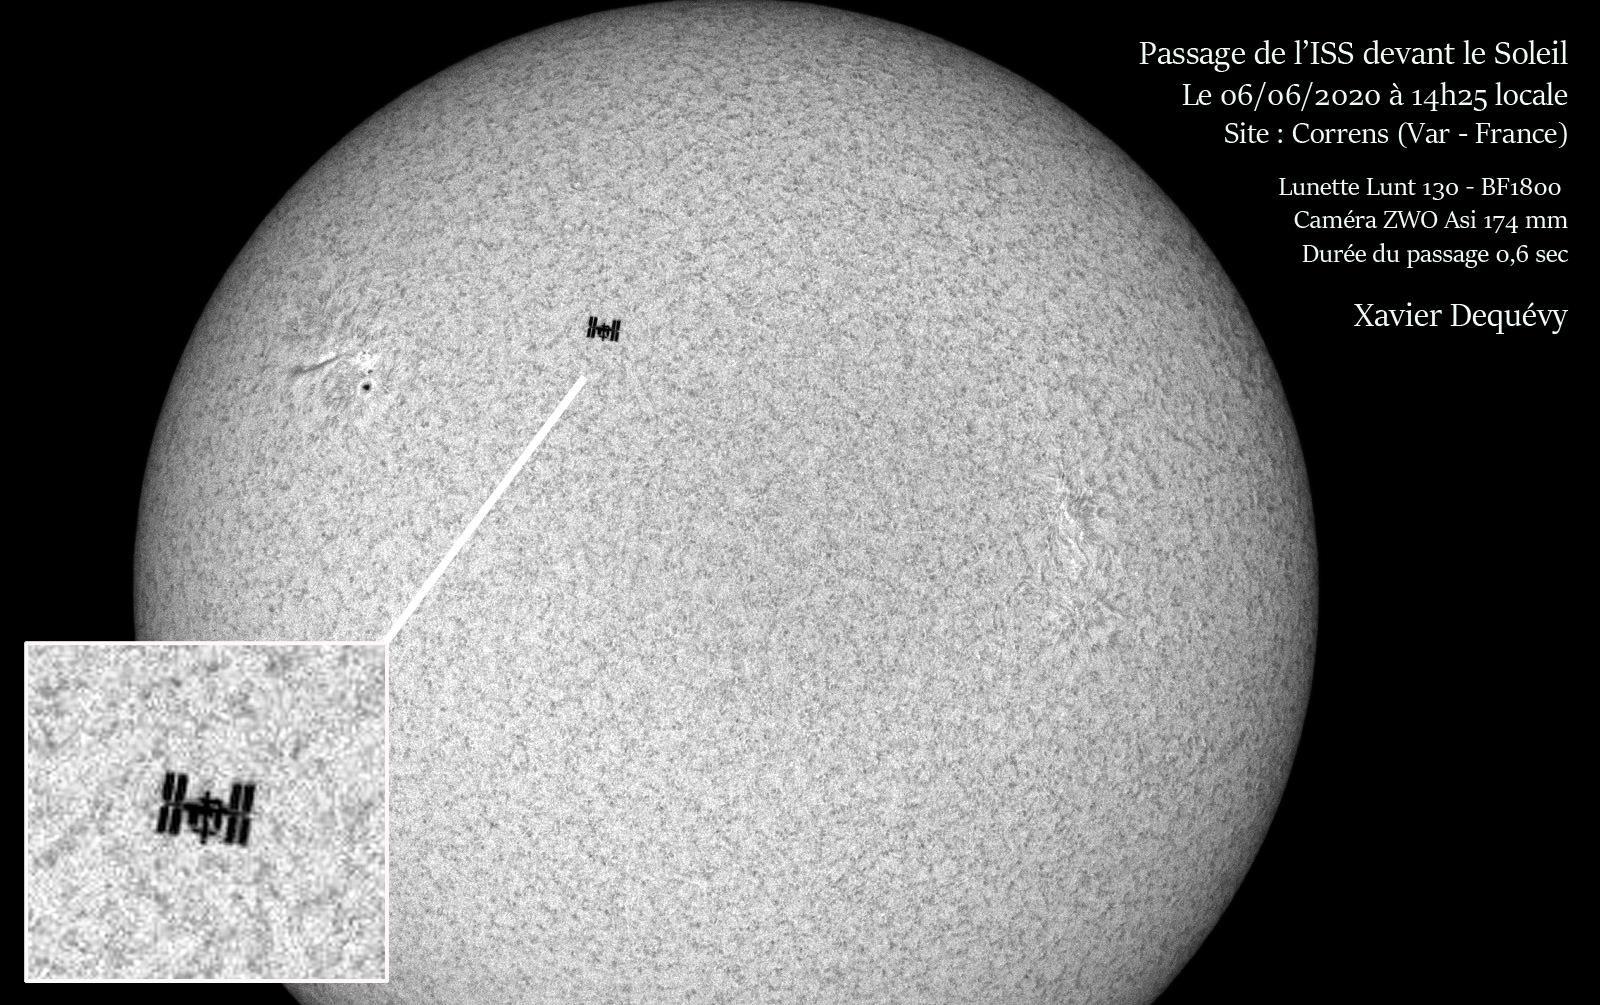 LUNT LS130MT/B1800 Télescope APO polyvalent pour le Soleil + la voûte céleste